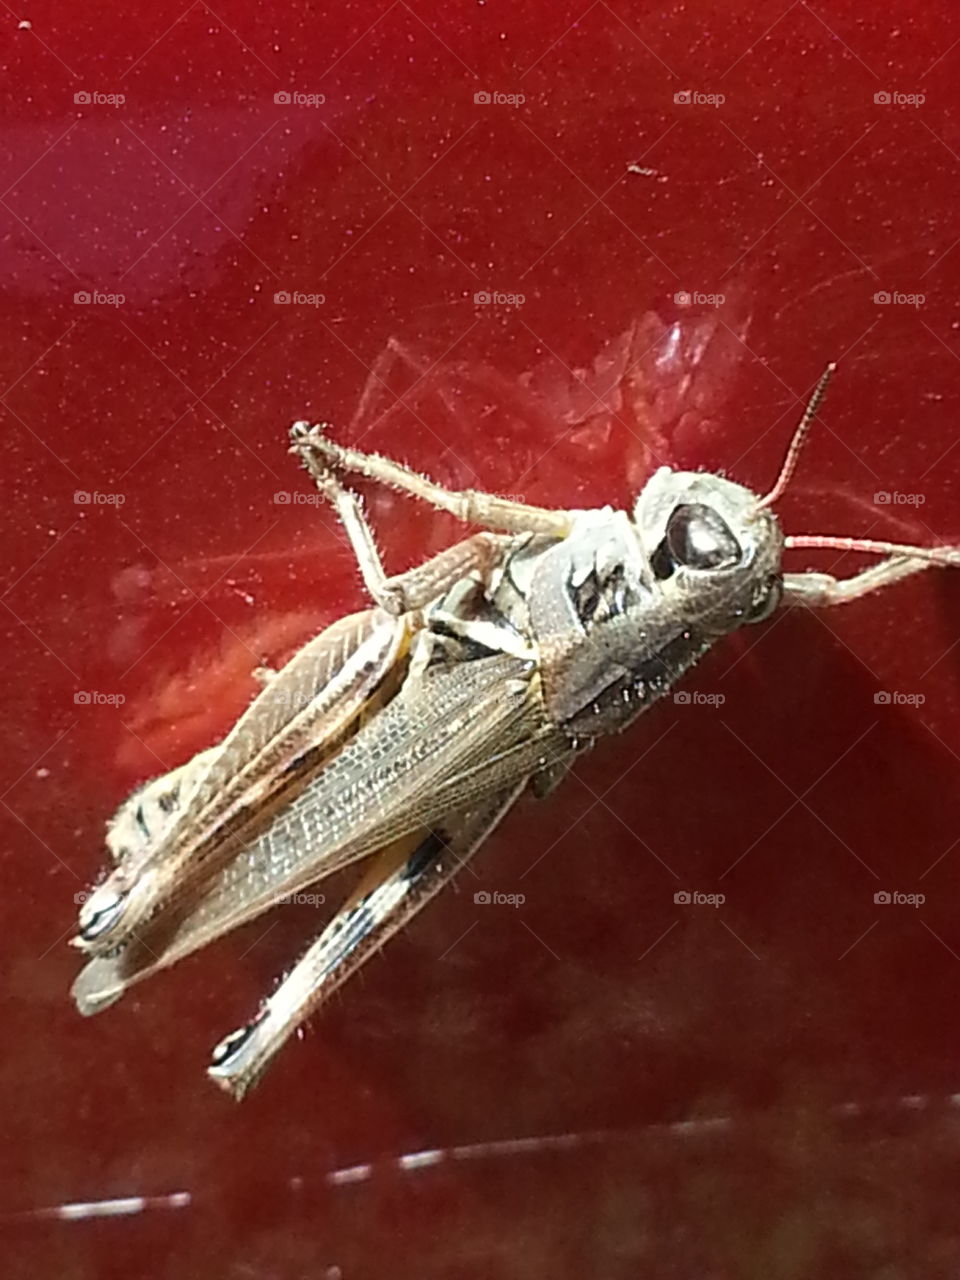 Grasshopper Close up - how do I look?